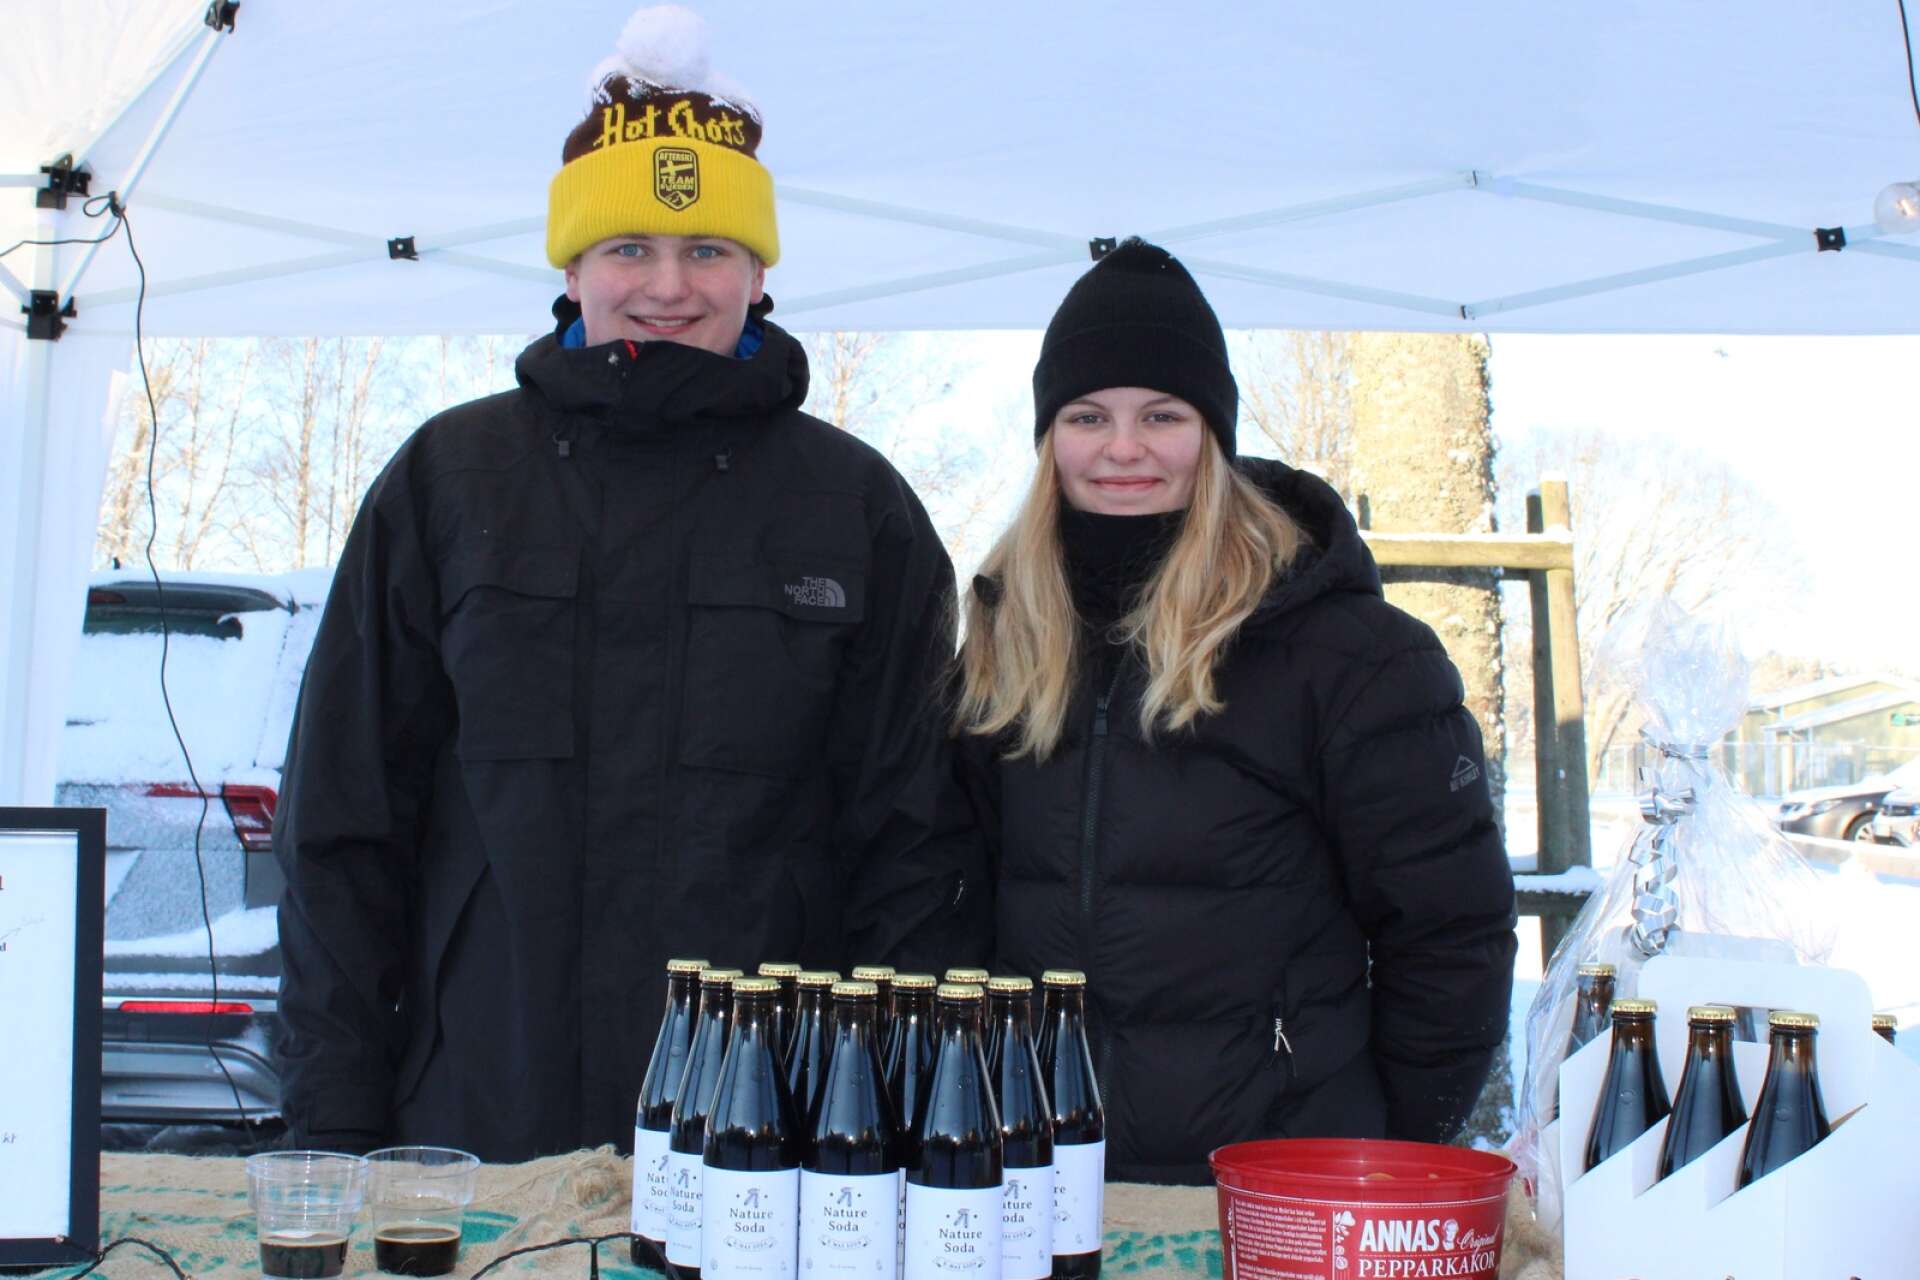 Gustav Malmberg och Maja Eliasson var på marknaden och sålde julmust via sitt UF-företag Nature soda UF från Svenljunga. ”Försäljningen har gått väldigt bra, över förväntan. Det är kul att många kommer fram och smakar och tycker att det är gott”, säger Gustav.